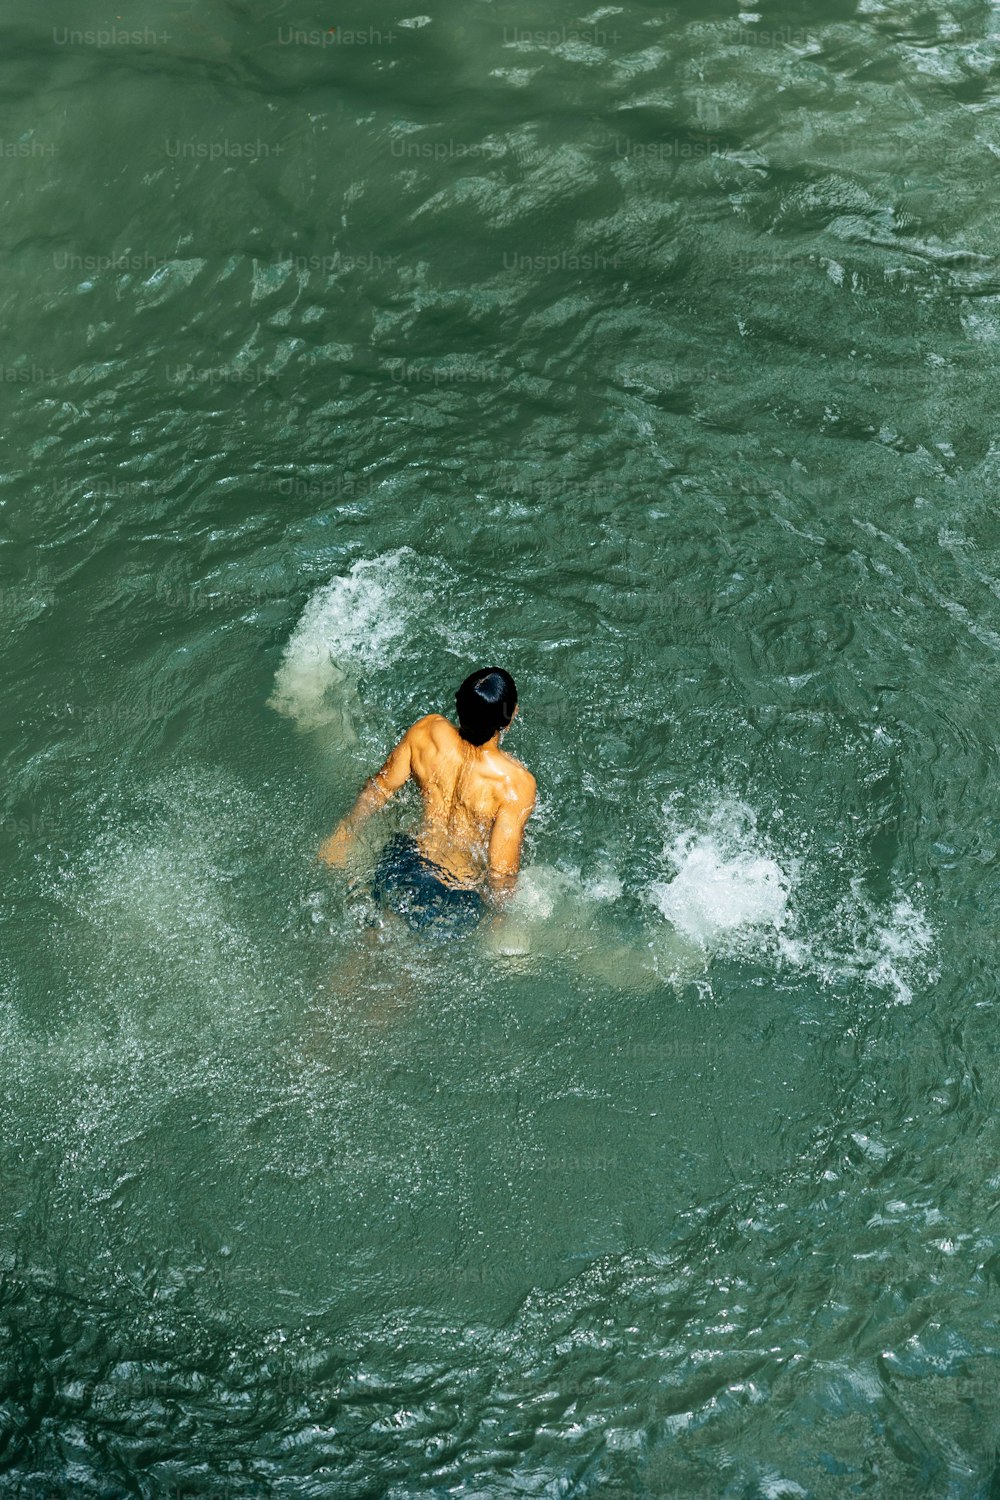 Un homme nageant dans un plan d’eau